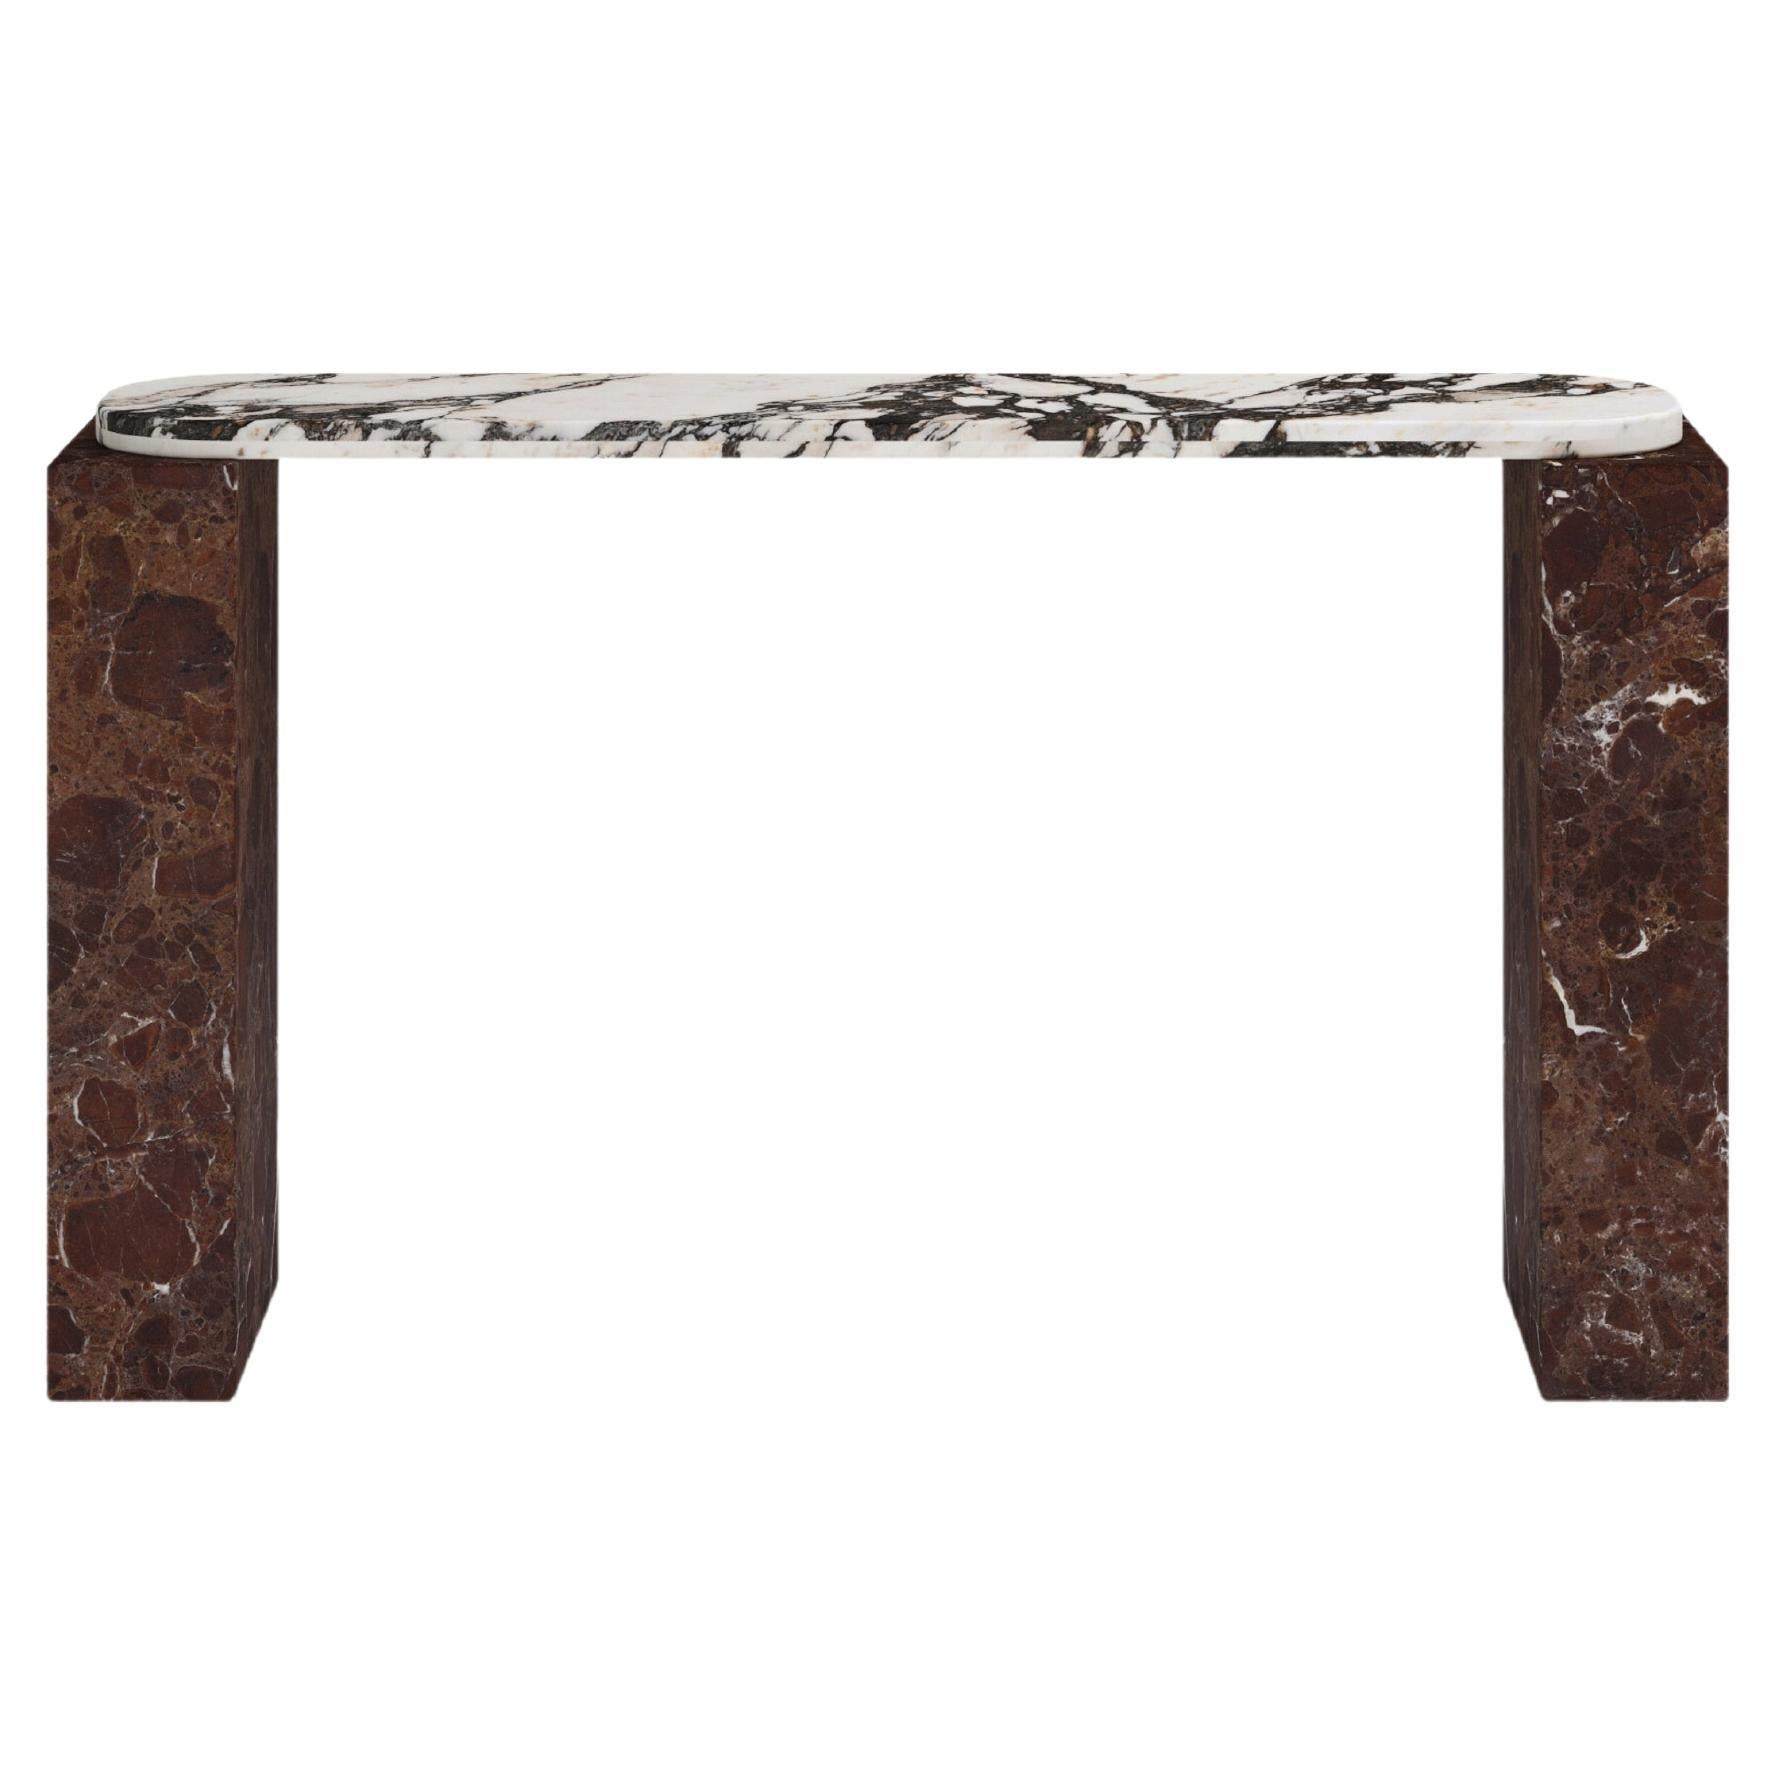 FORM(LA) Cubo Console Table 50”L x 17”W x 36”H Calacatta Viola & Rosso Marble For Sale